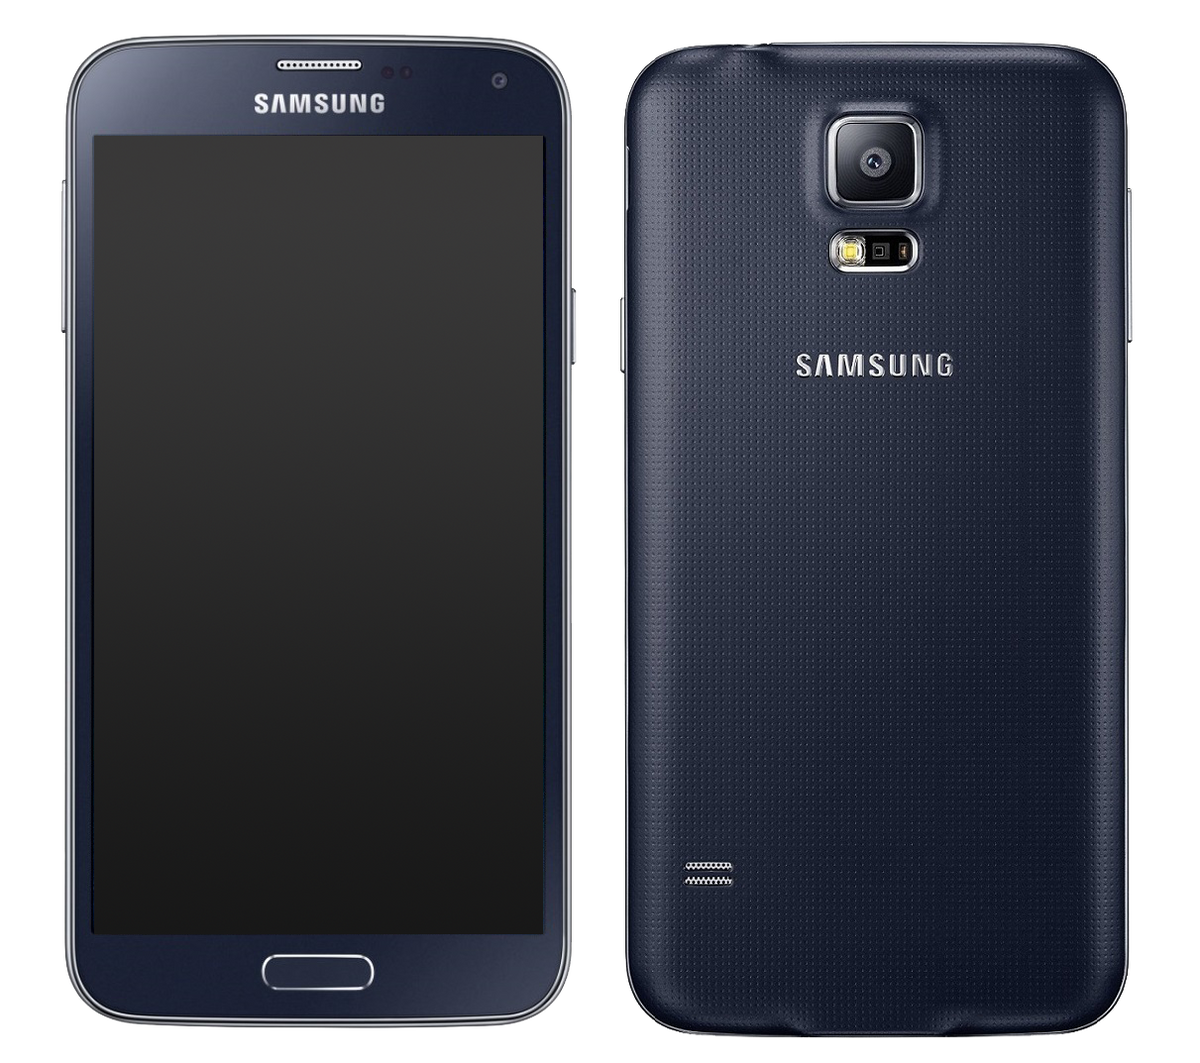 Samsung Galaxy s5 Neo schwarz - Onhe Vertrag